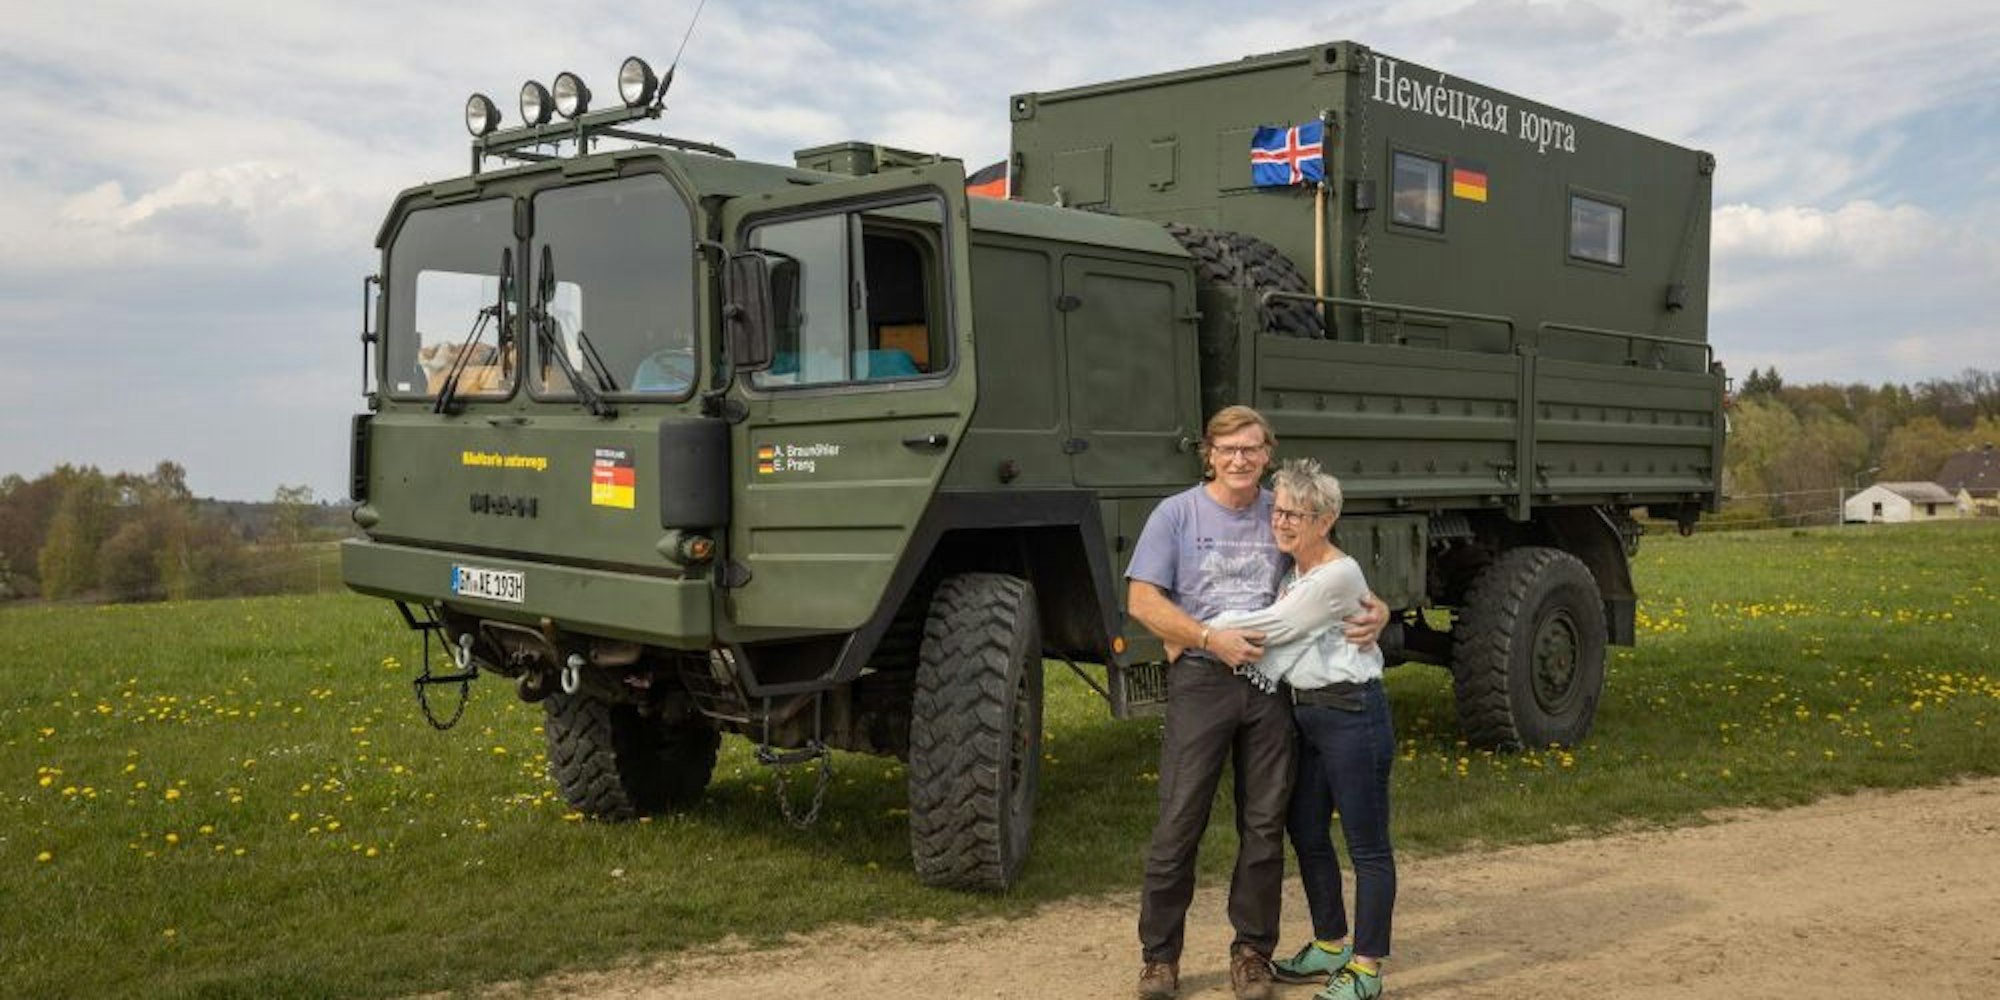 15 Tonnen wiegt der Bundeswehr-Lkw, den Anke Braunöhler und Eric Prang für ihre Reise nach Island selbst ausgebaut haben.